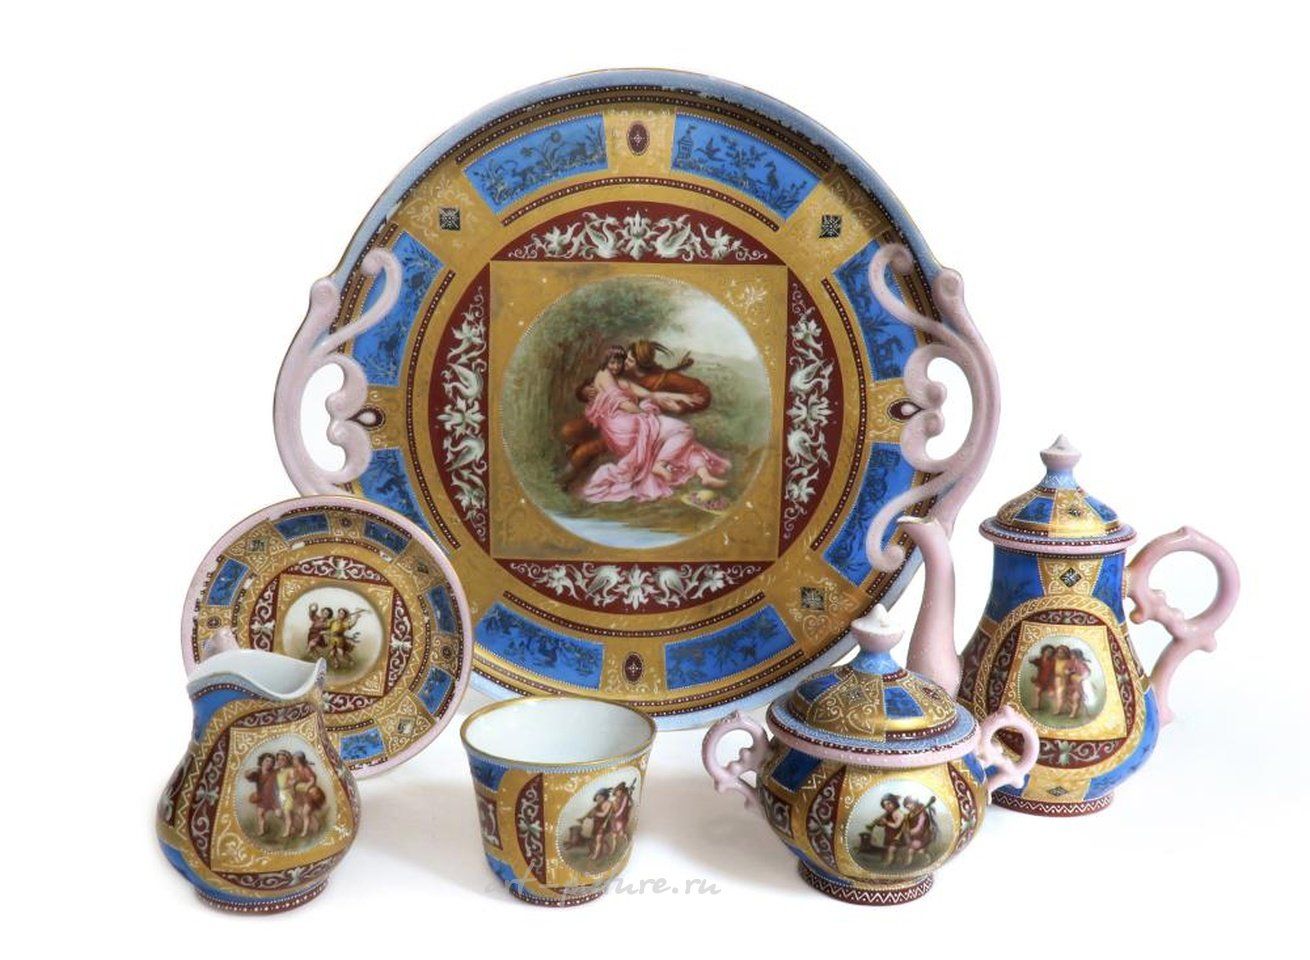 Royal Vienna , Чайный сервиз в стиле королевской Вены, 19 век